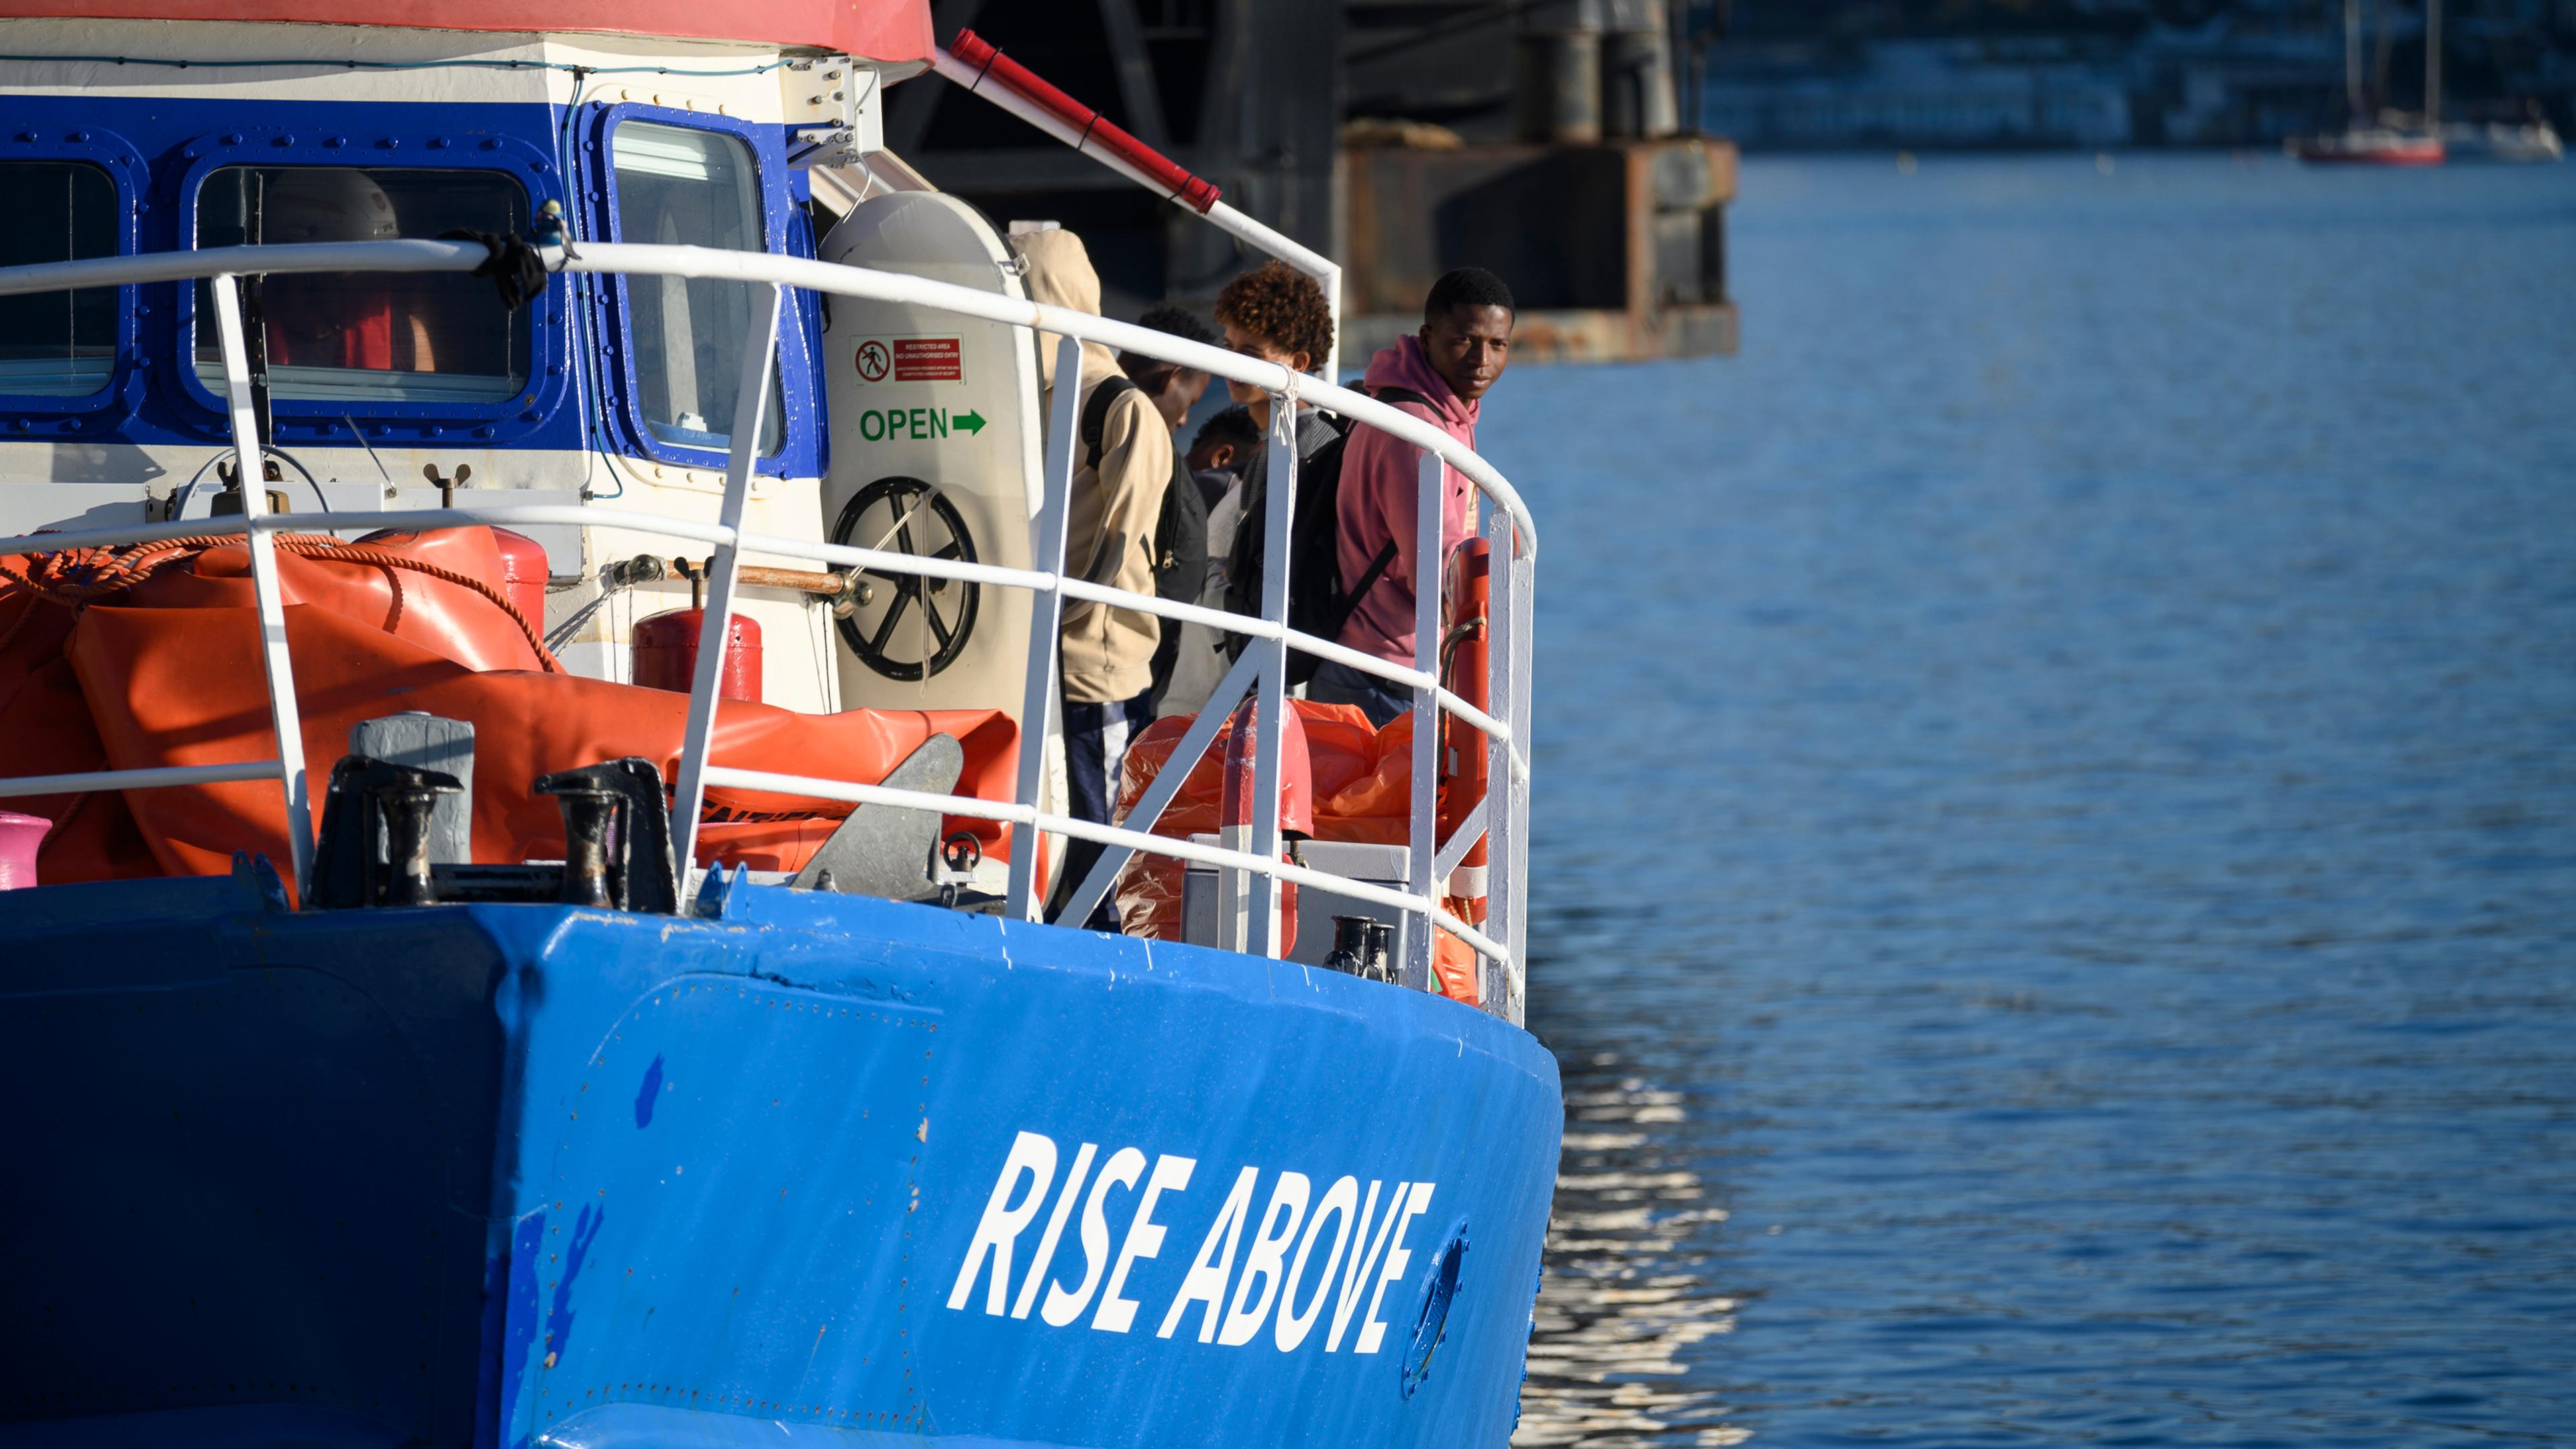  Italien, Reggio Calabria: Migranten schauen aus dem deutschen humanitären Schiff "Rise Above" heraus, als sie in der süditalienischen Hafenstadt Reggio Calabria anlegen.